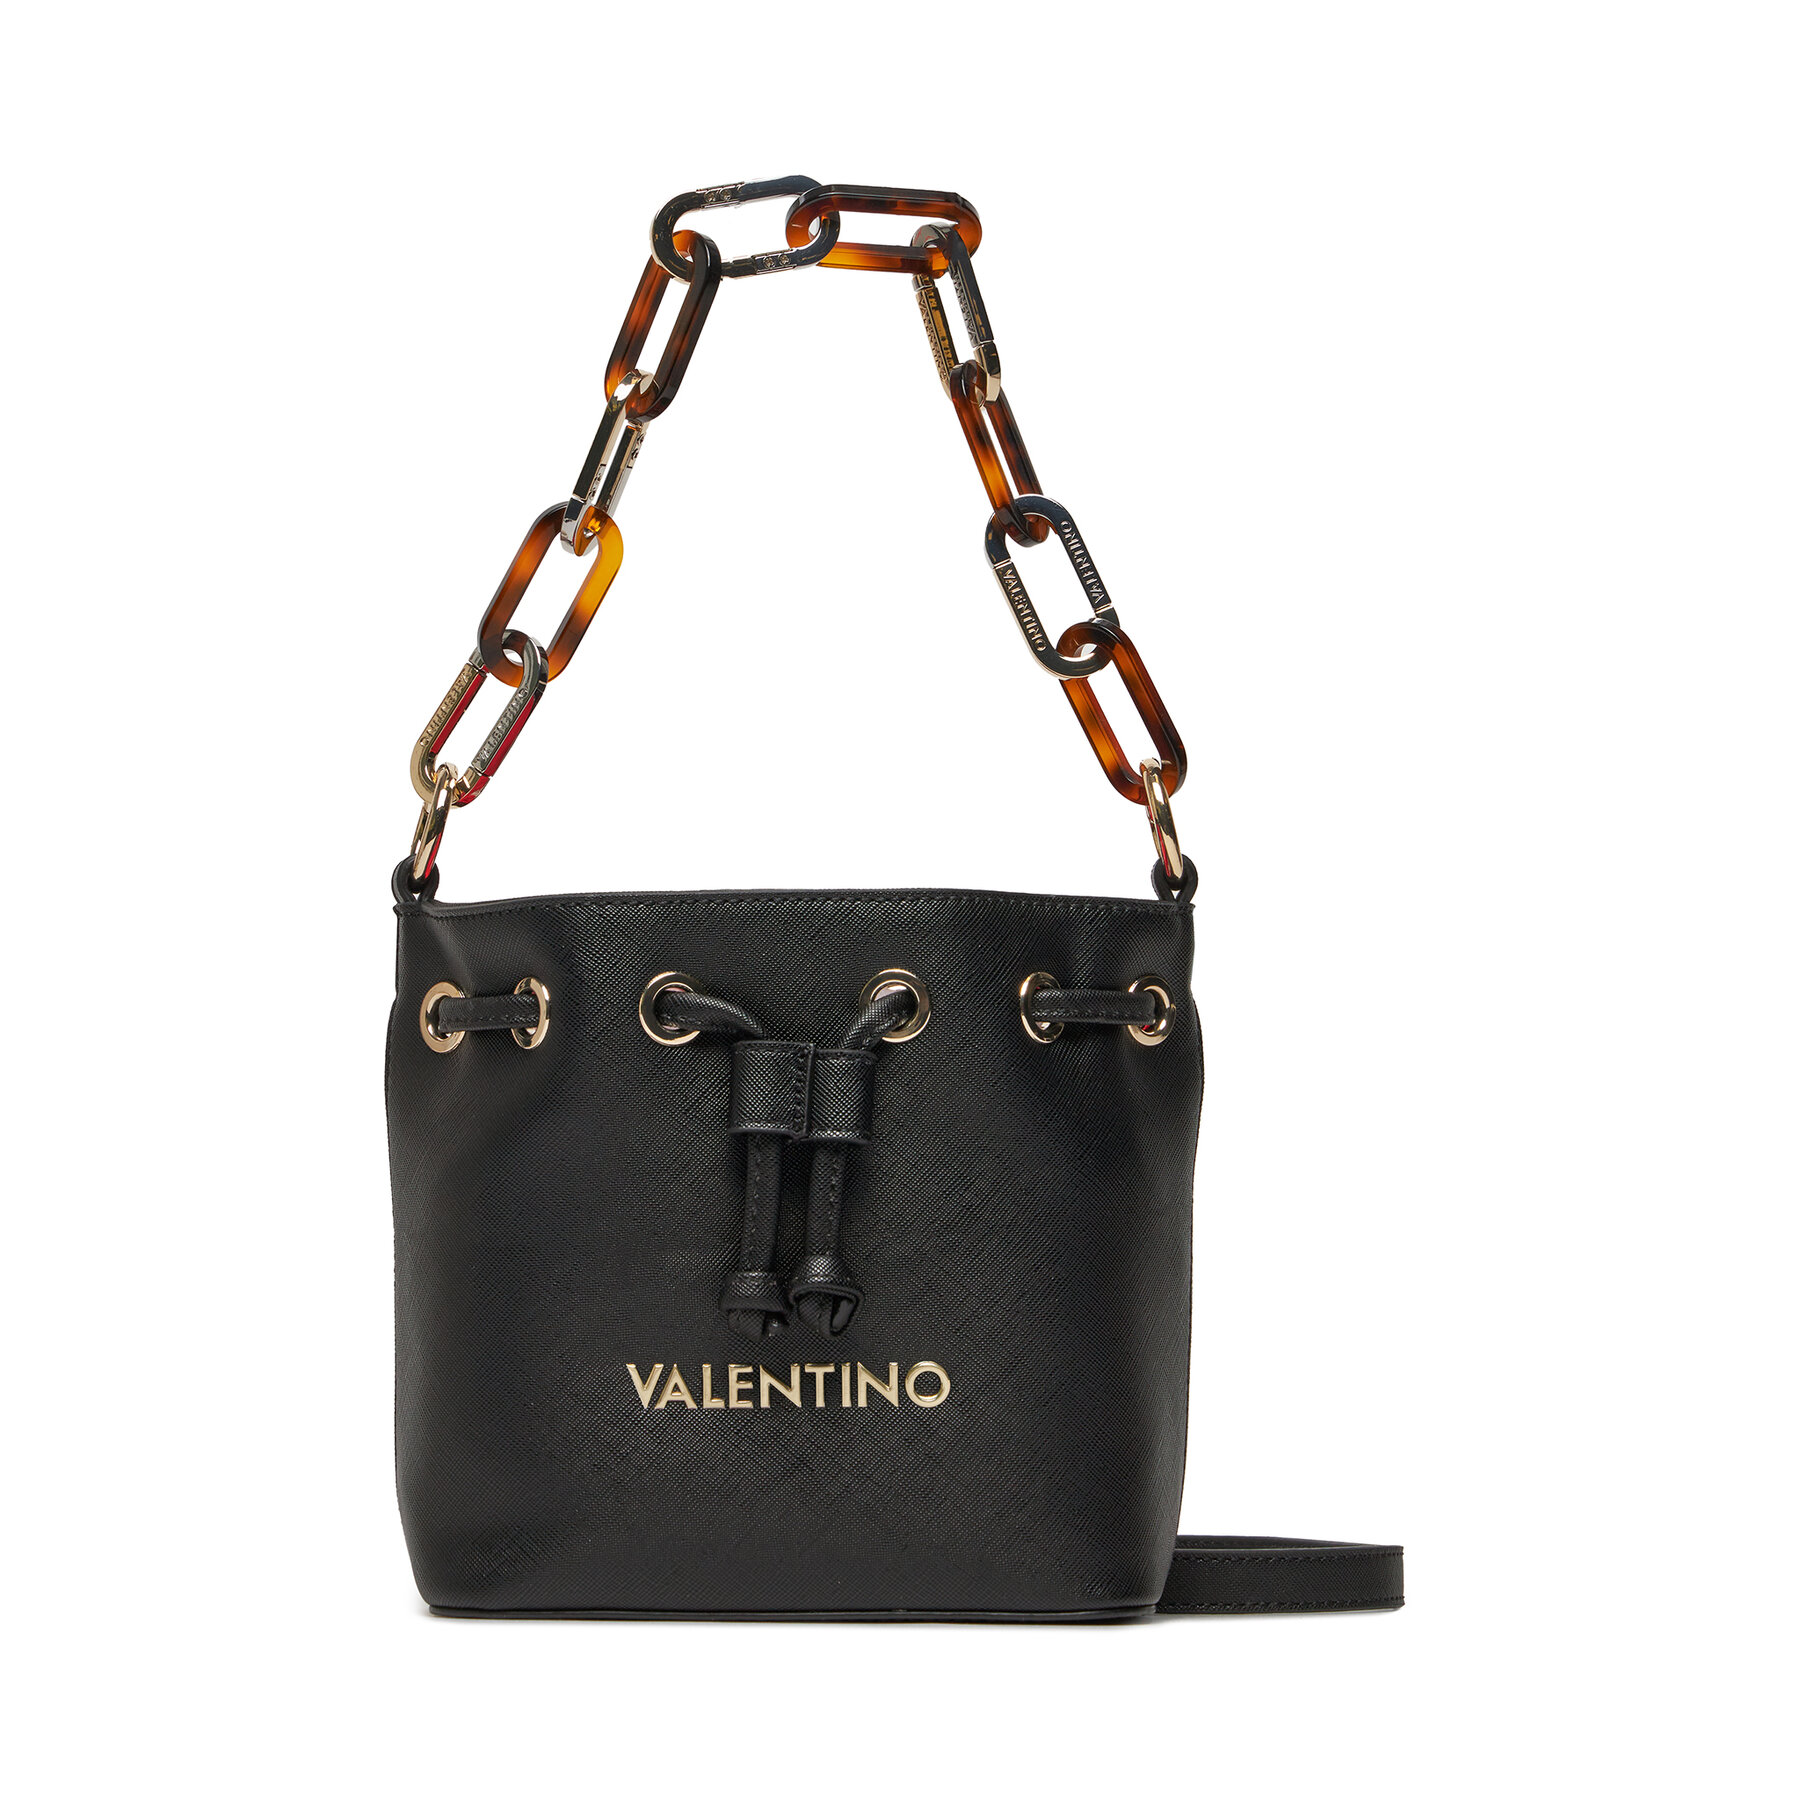 Handtasche Valentino Bercy VBS7LM02 Nero 001 von Valentino